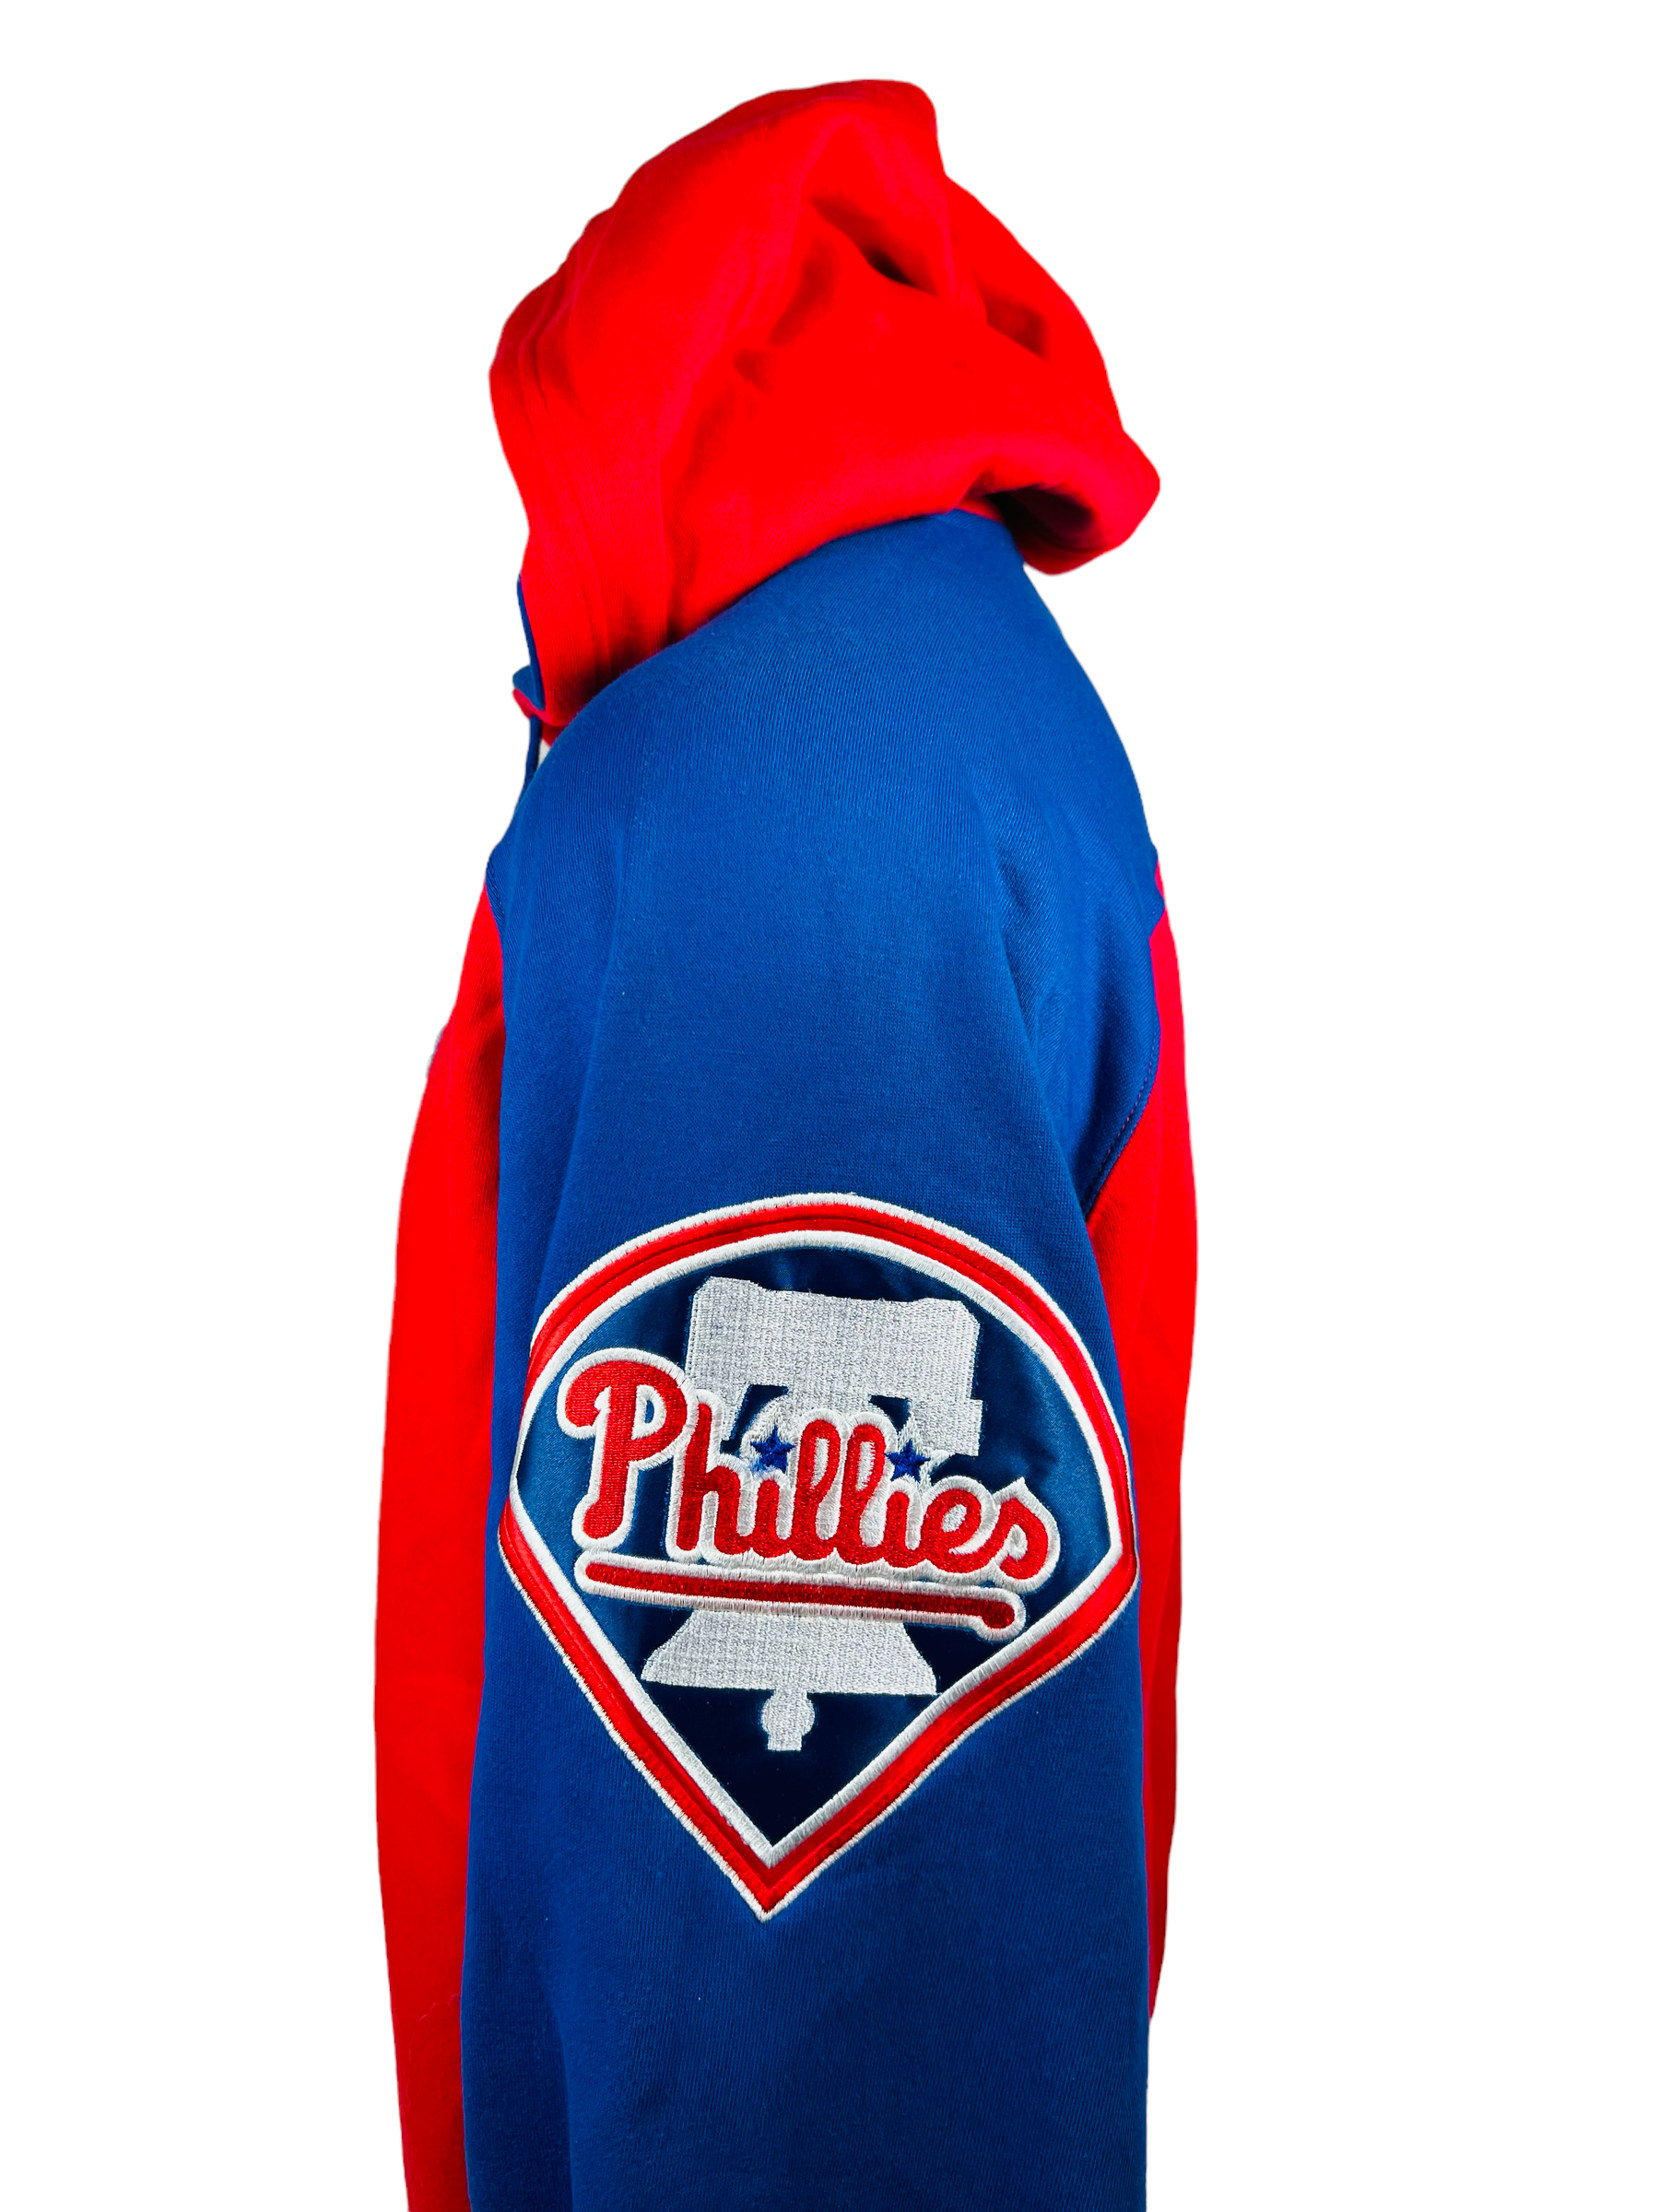 Phillies Vintage Baseball Sweatshirt, Philadelphia MLB Hoodie